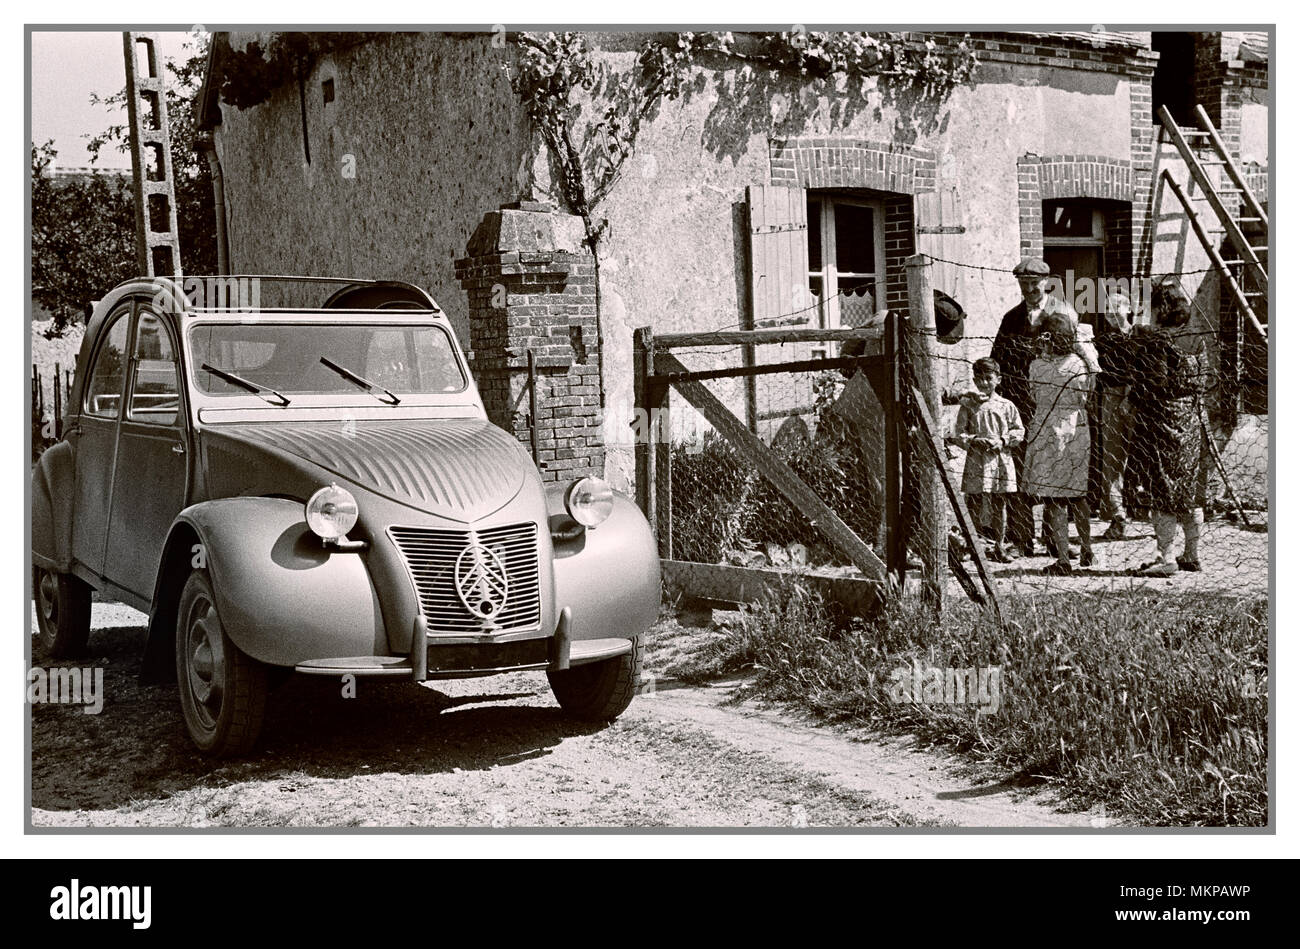 2CV FRANZÖSISCHES OLDTIMER aus den 1950er Jahren Citroën 2CV deux chevaux 1950 typisches französisches Familienauto in französischer ländlicher Umgebung für französische Pressewerbung entworfen von Flaminio Bertoni: Stockfoto